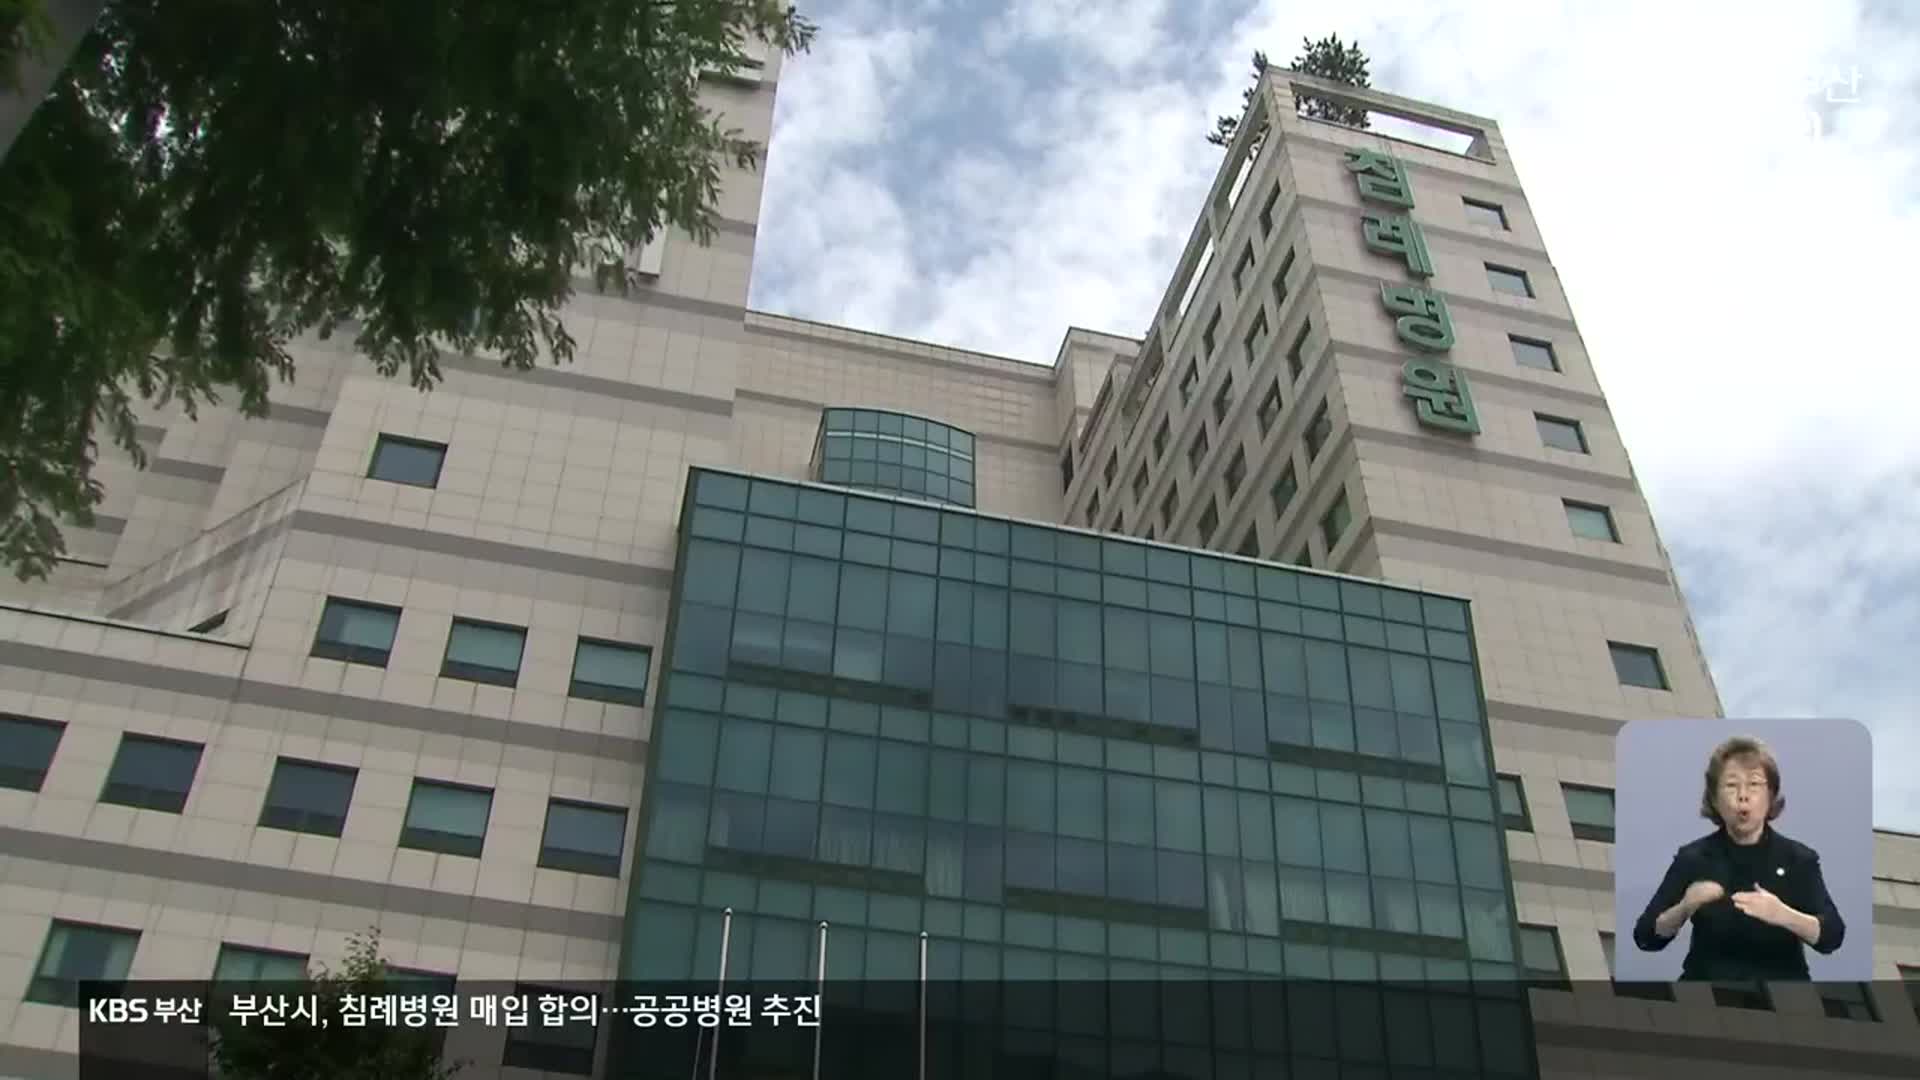 침례병원 공공병원화 본격 추진…남은 절차는?